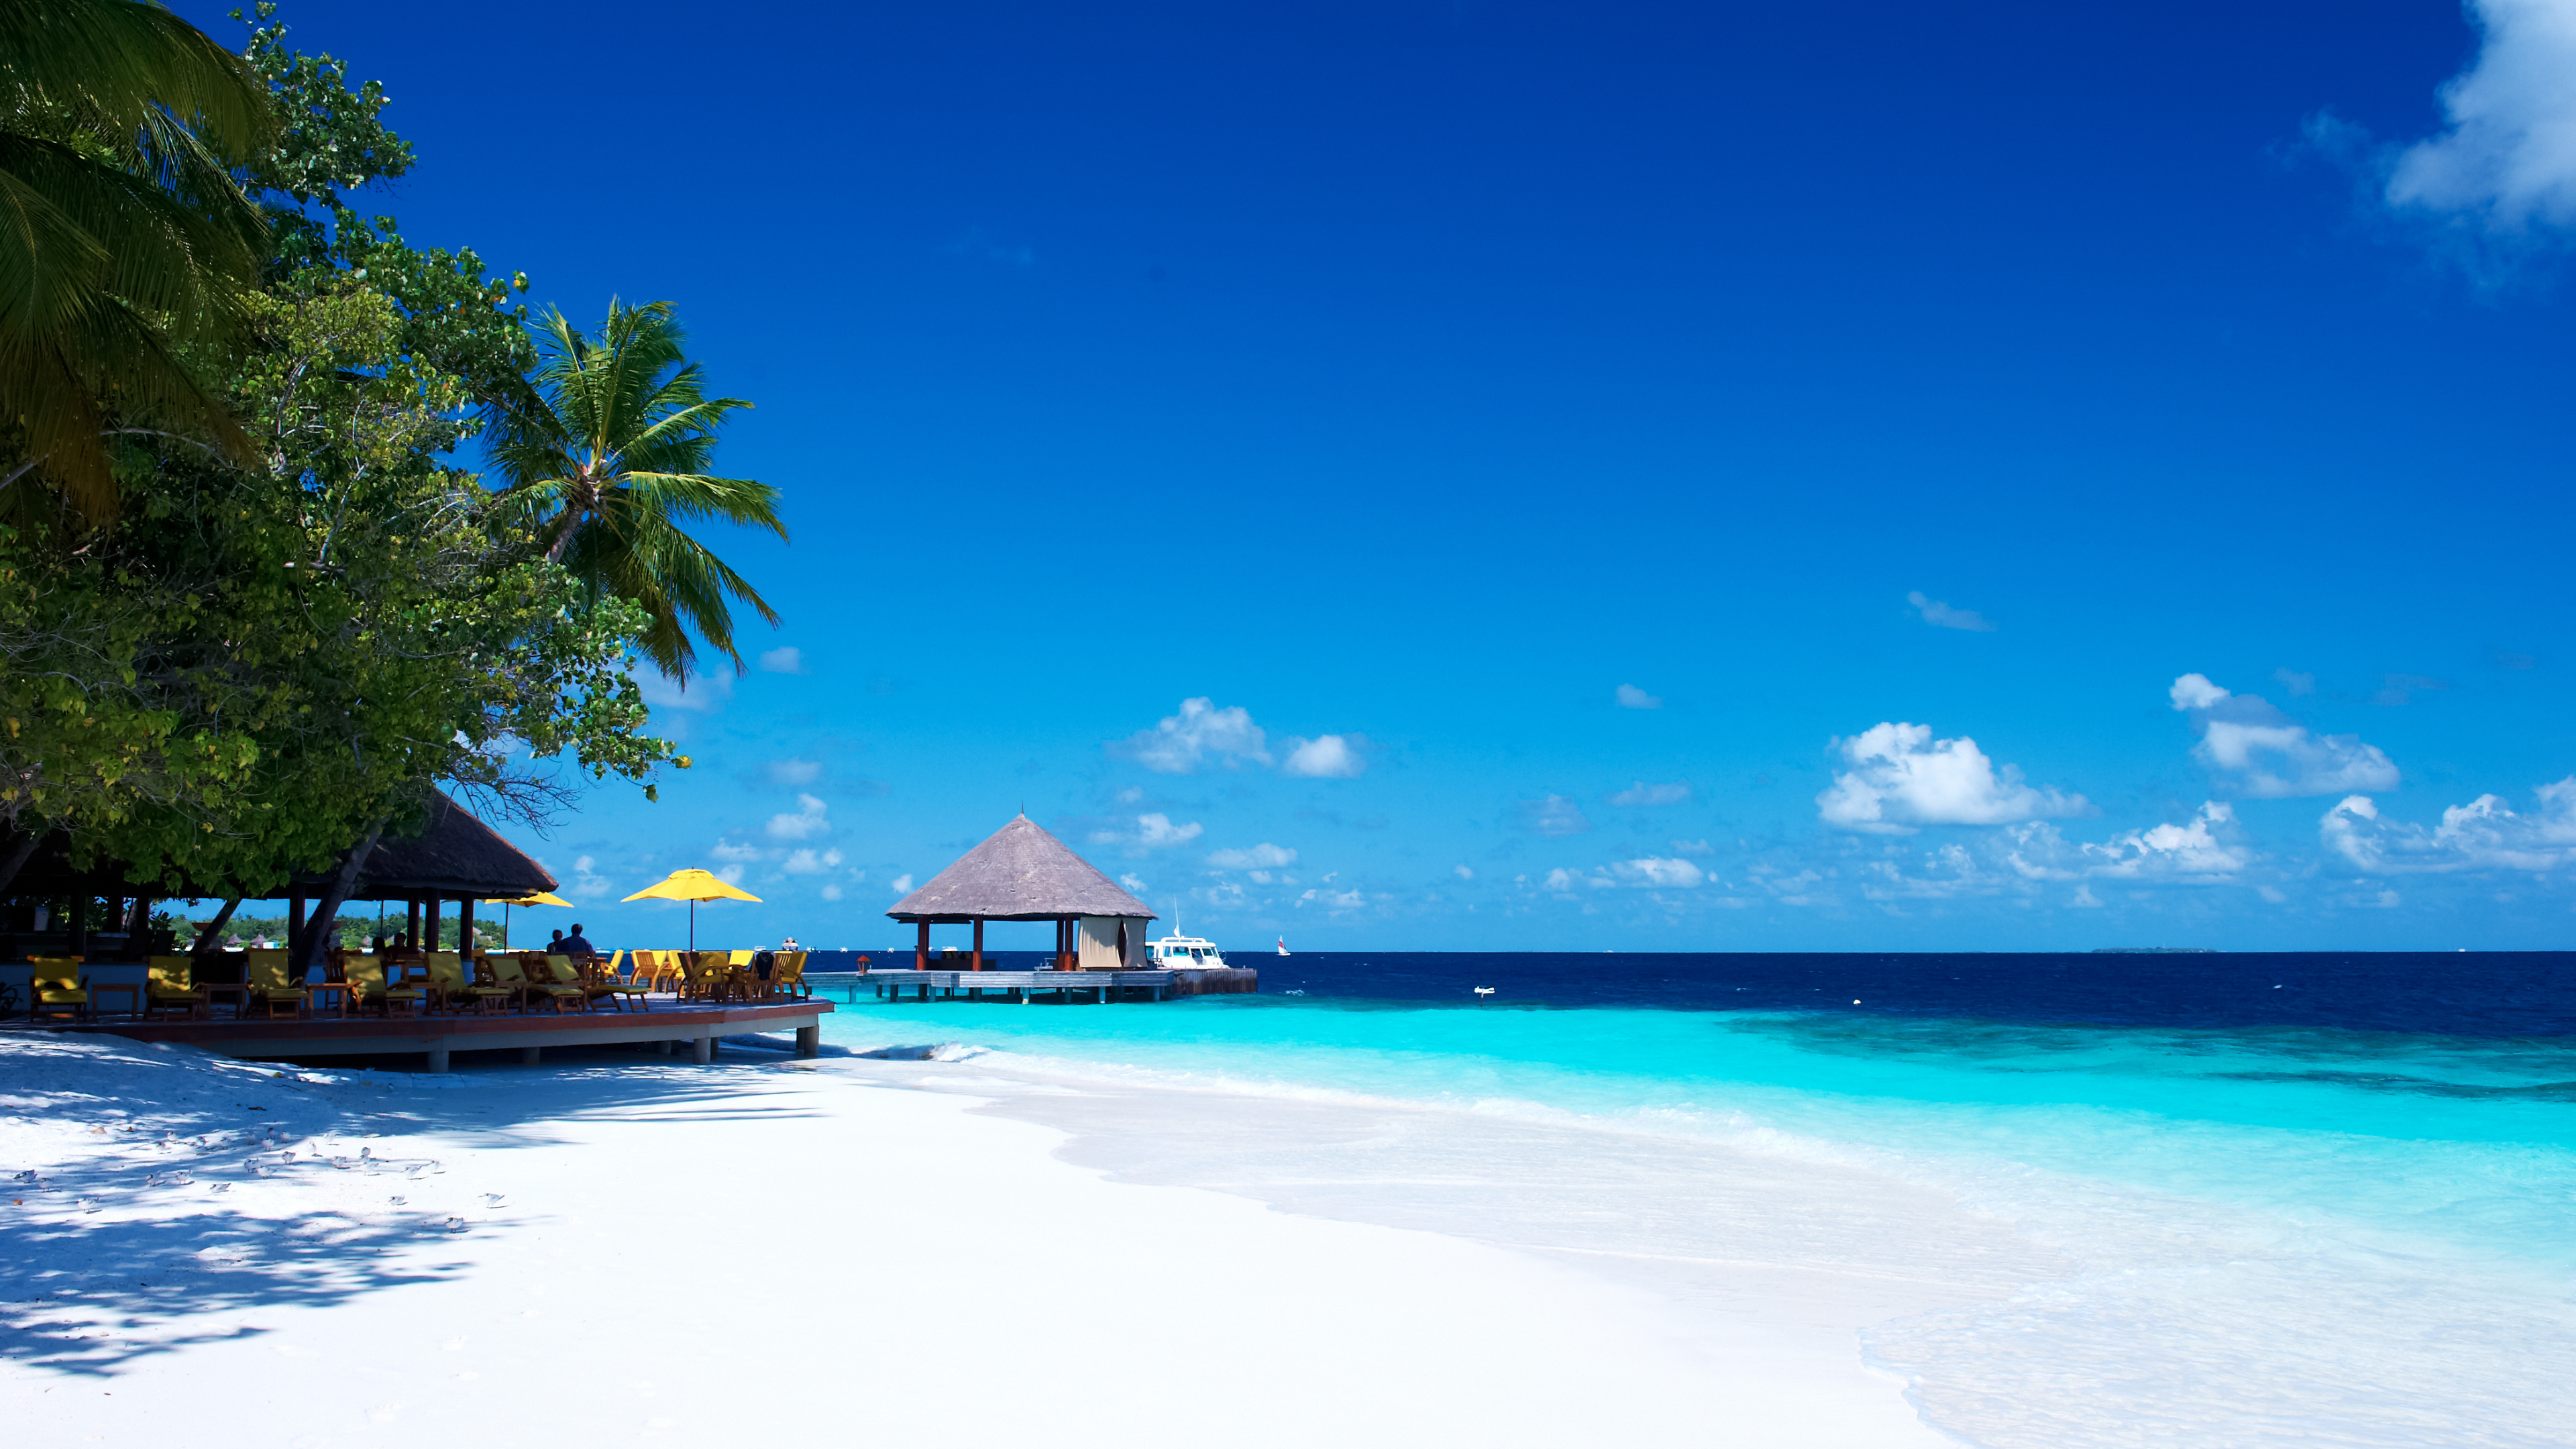 度假村, 度假小岛, 热带地区, 大海, 加勒比 壁纸 3840x2160 允许